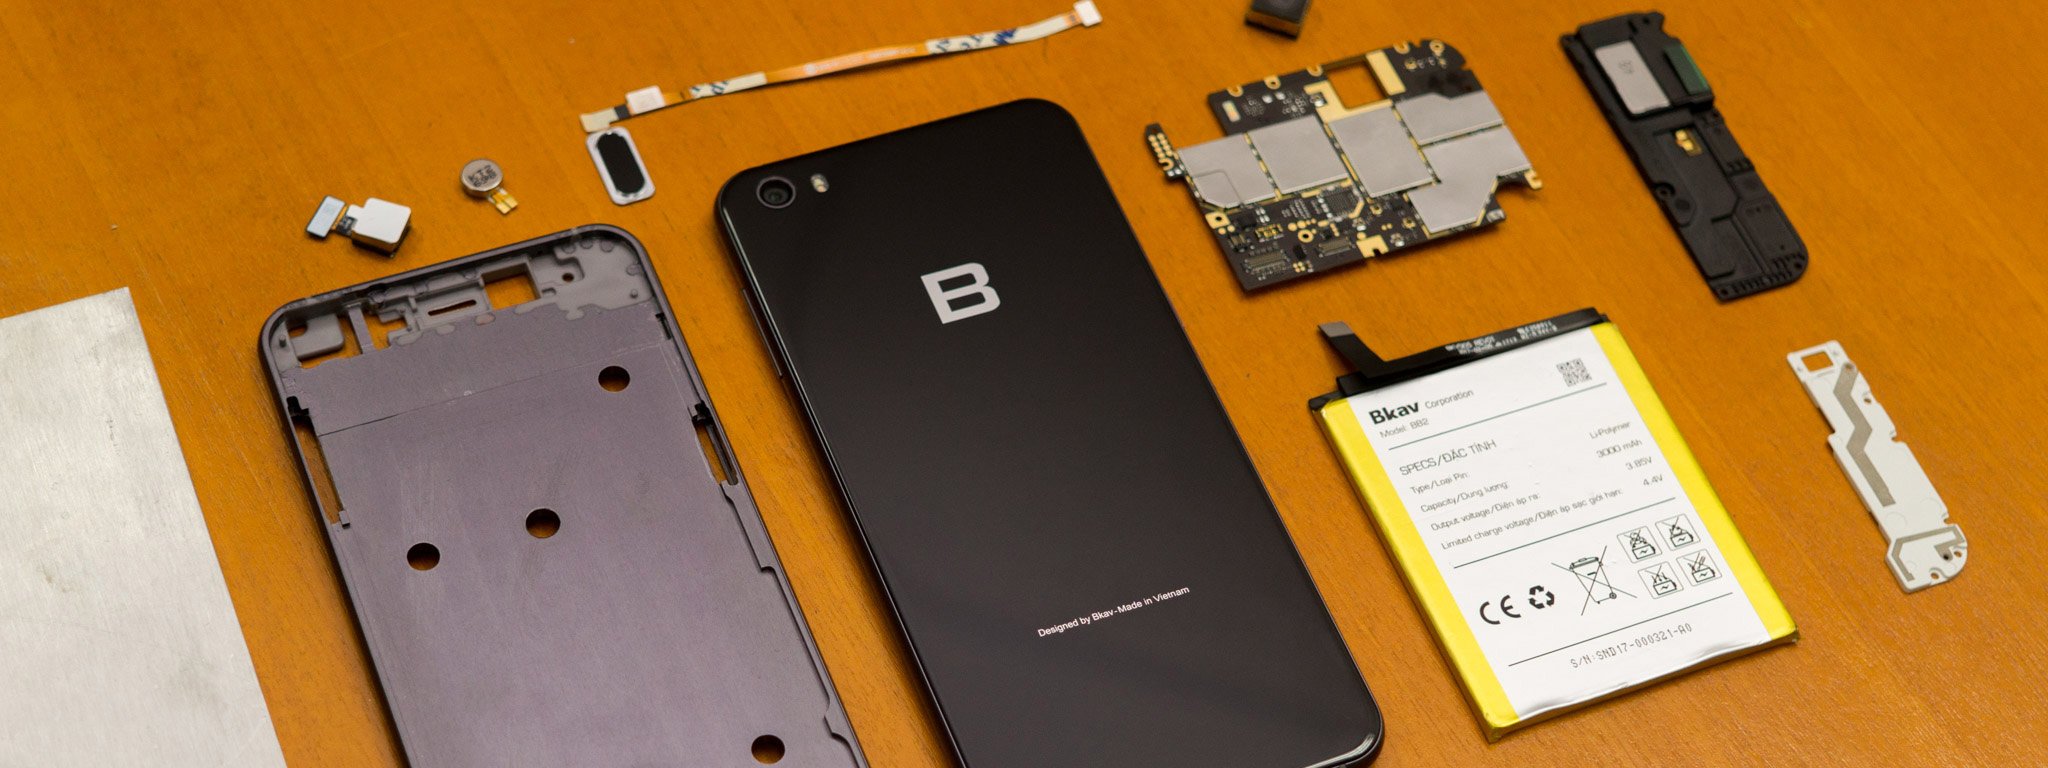 Quá trình thiết kế BPhone: bị Qualcomm chê, 4 năm mạch không chạy cho đến Bphone 2017